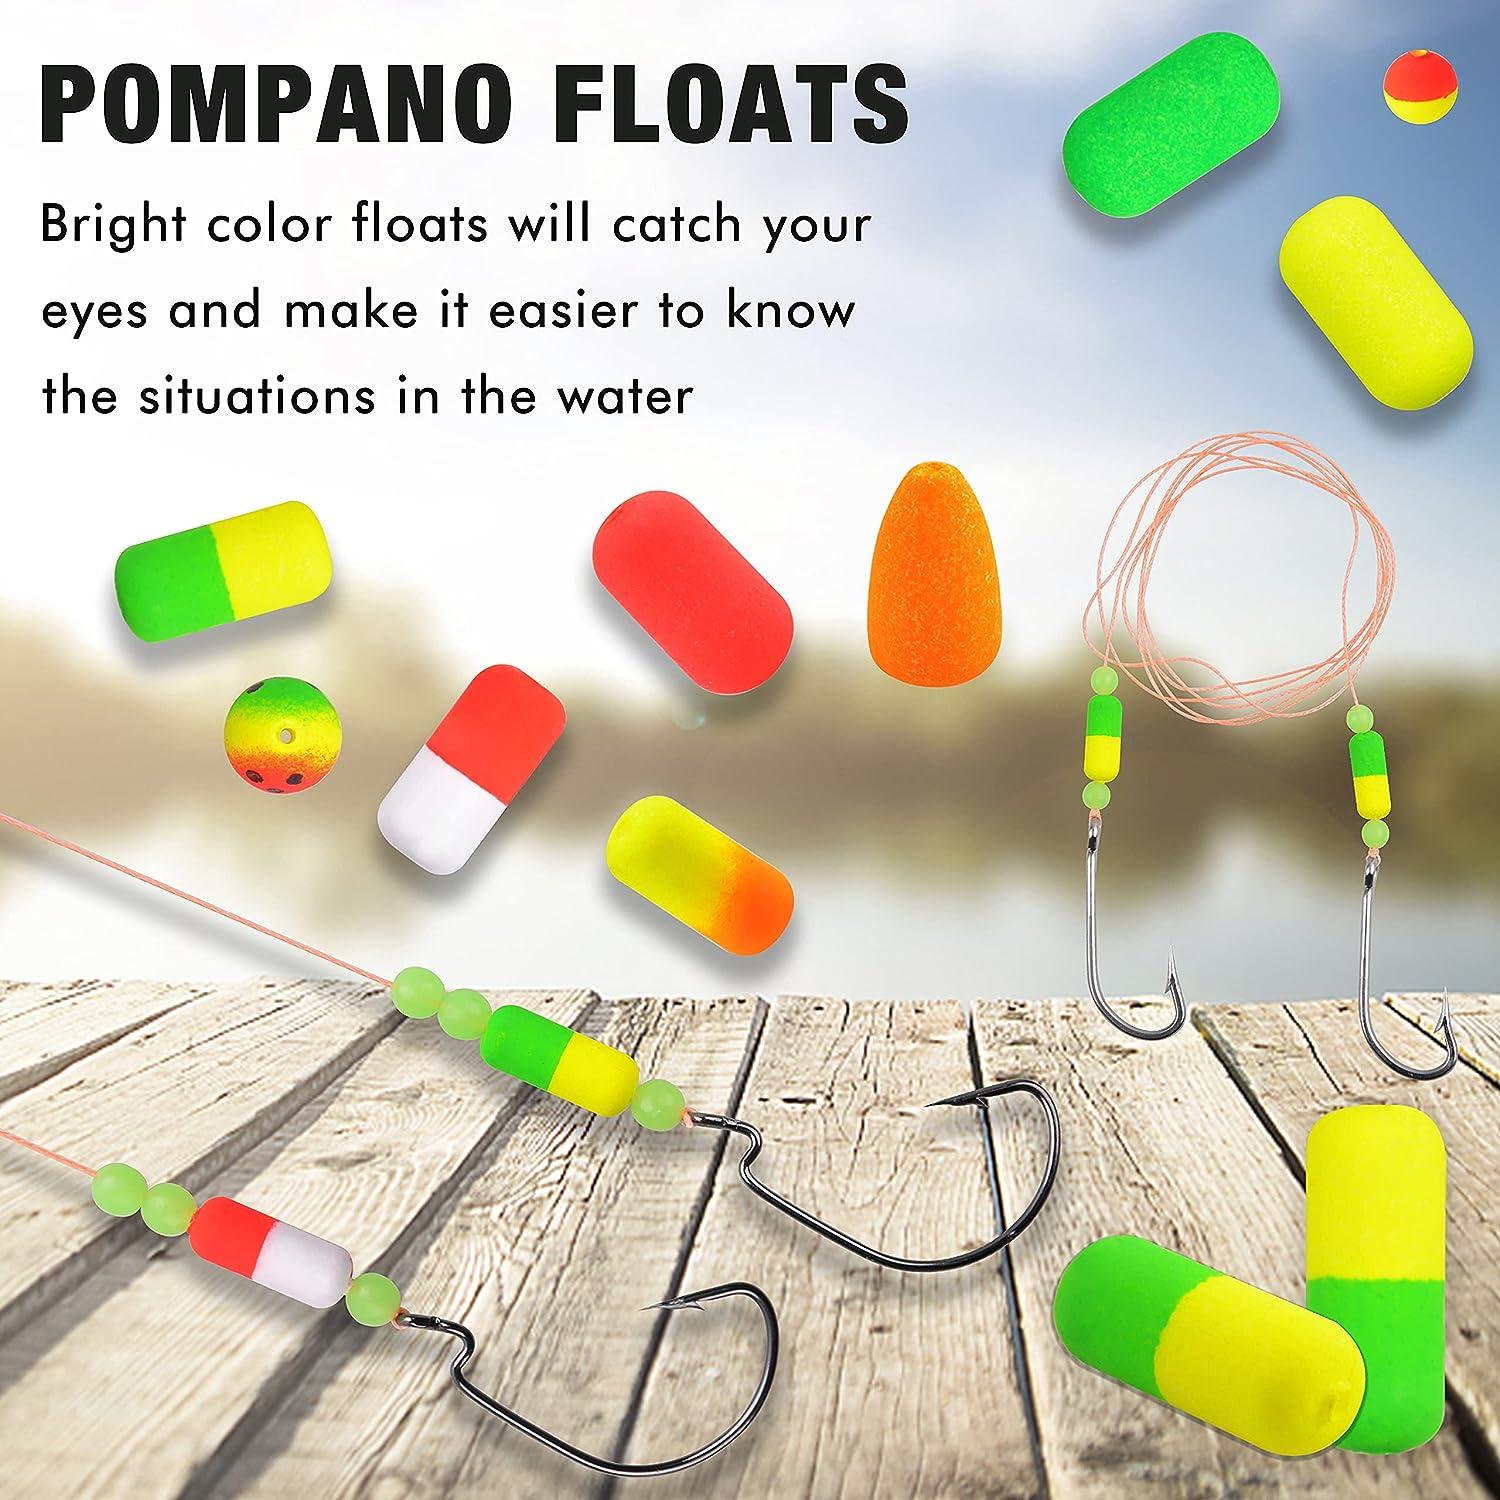 pompano rig floats